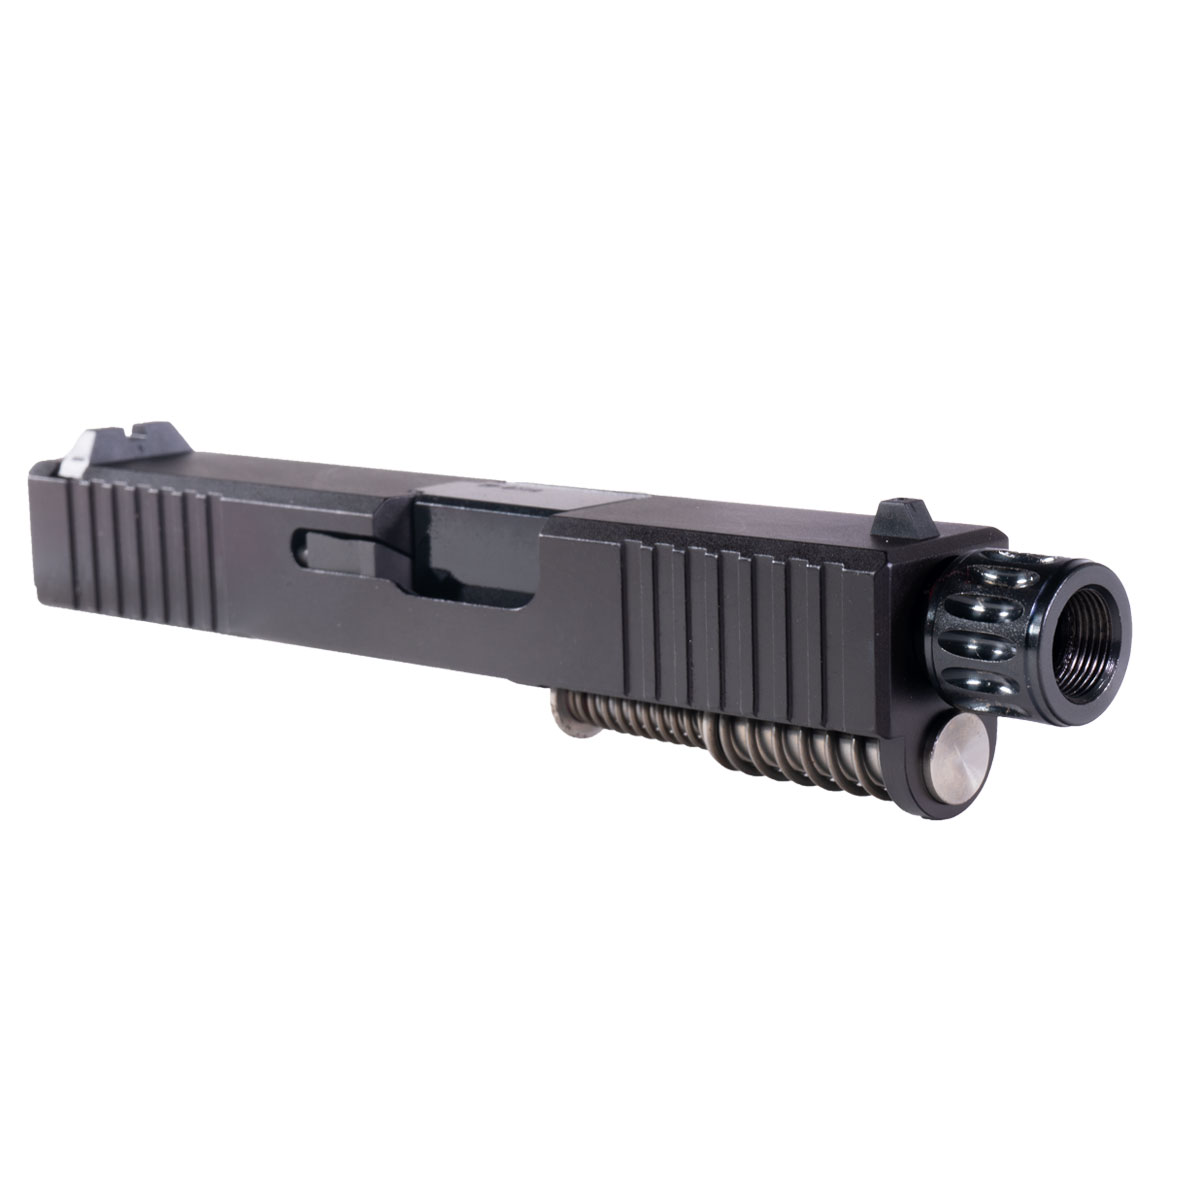 DDS 'Snub Nose' 9mm Complete Slide Kit - Glock 26 Gen 1-2 Compatible